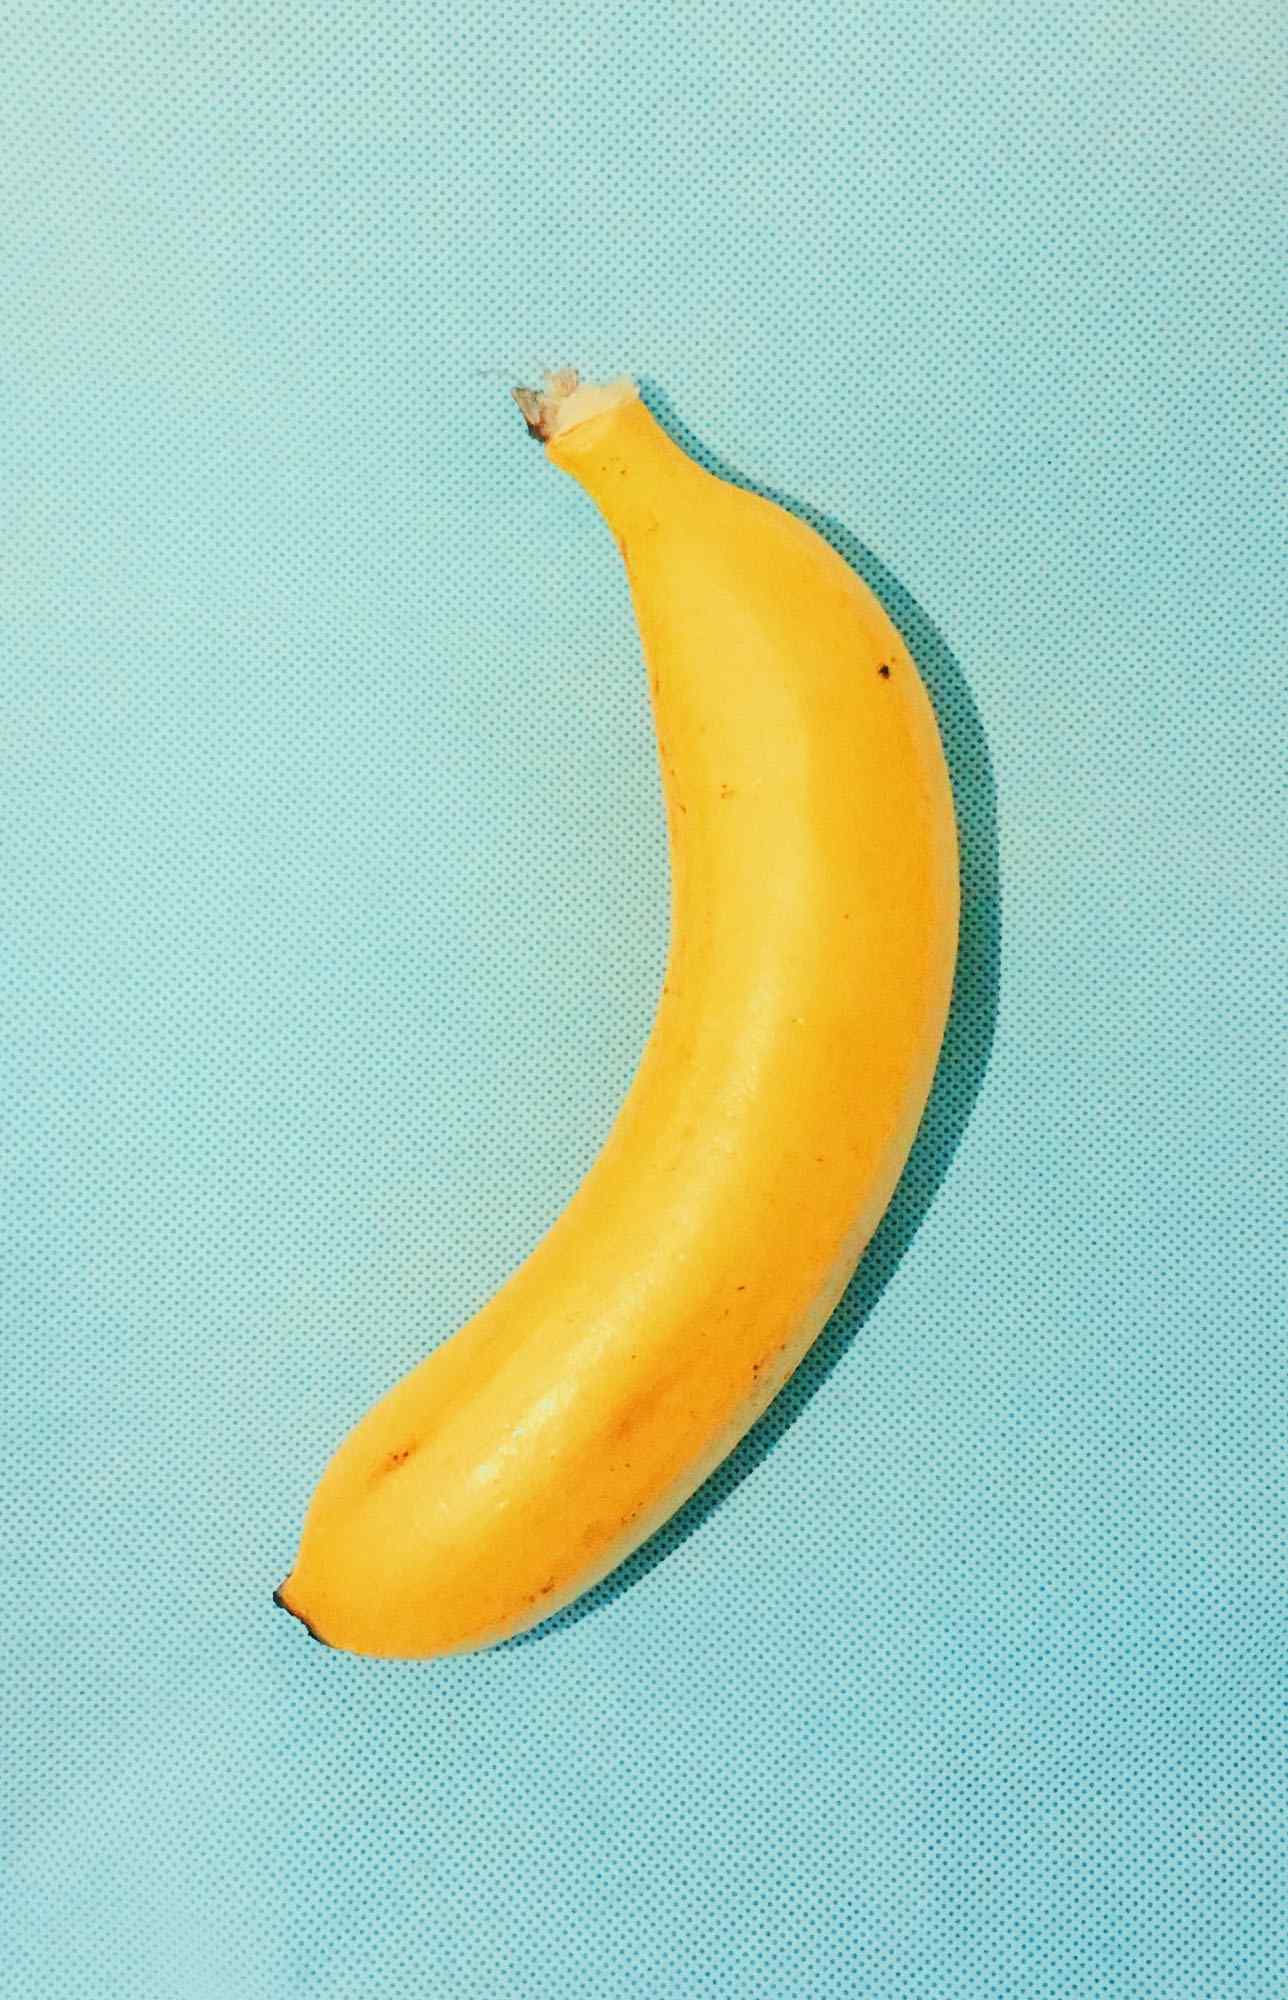 一只小香蕉简约创意静物摆拍手机壁纸